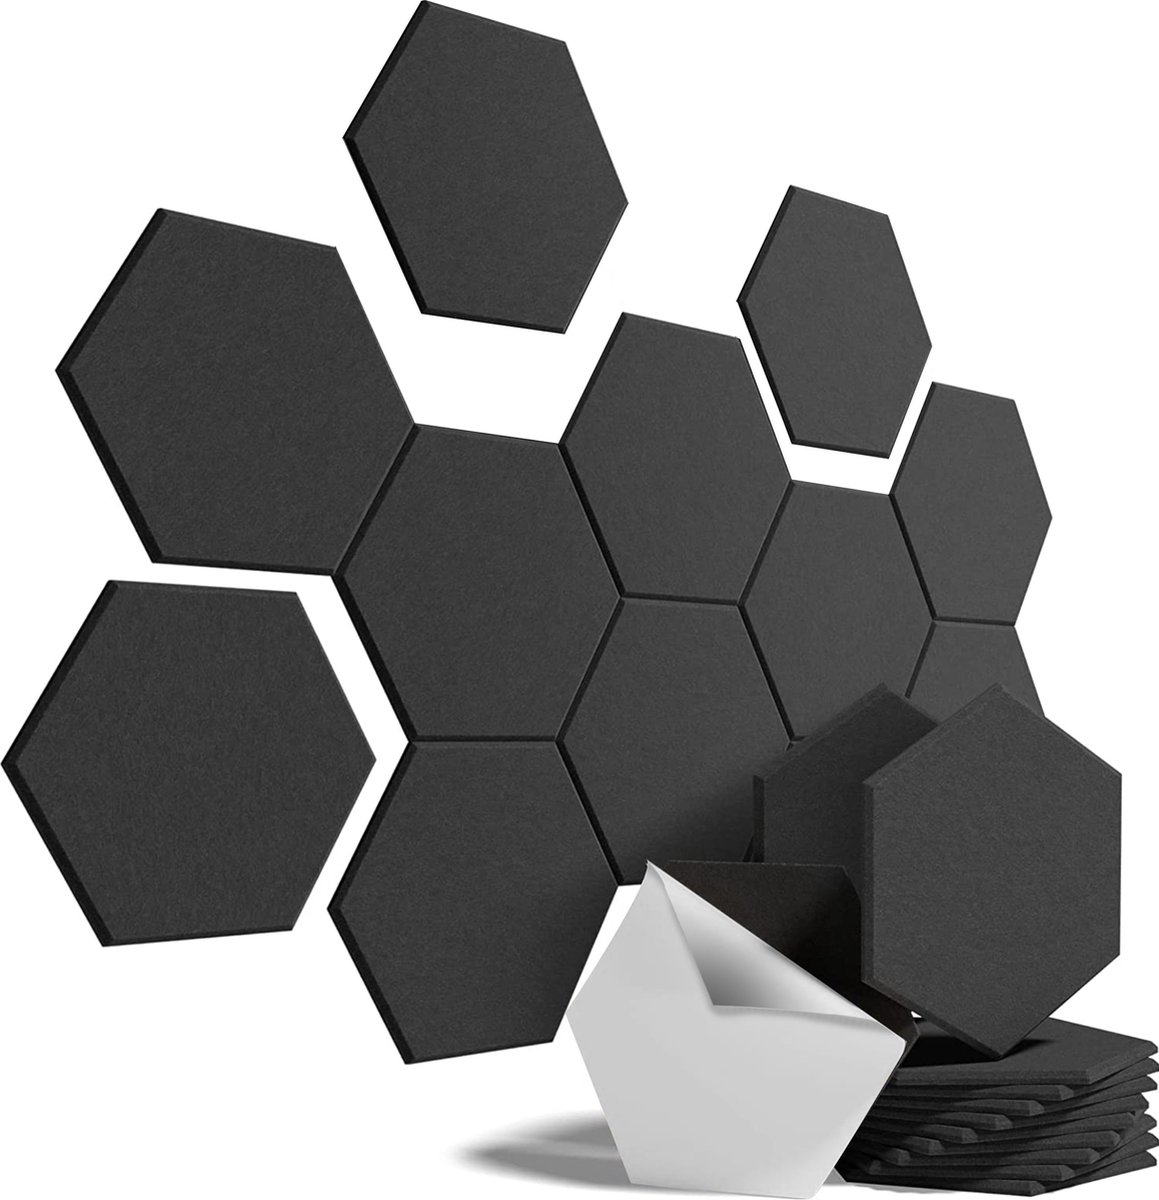 What's Goods® 1400g/m2 Akoestische hexagon panels vilt Set x12 tegels - Muur studio absorptieplaten / geluidsisolatie panelen zwart